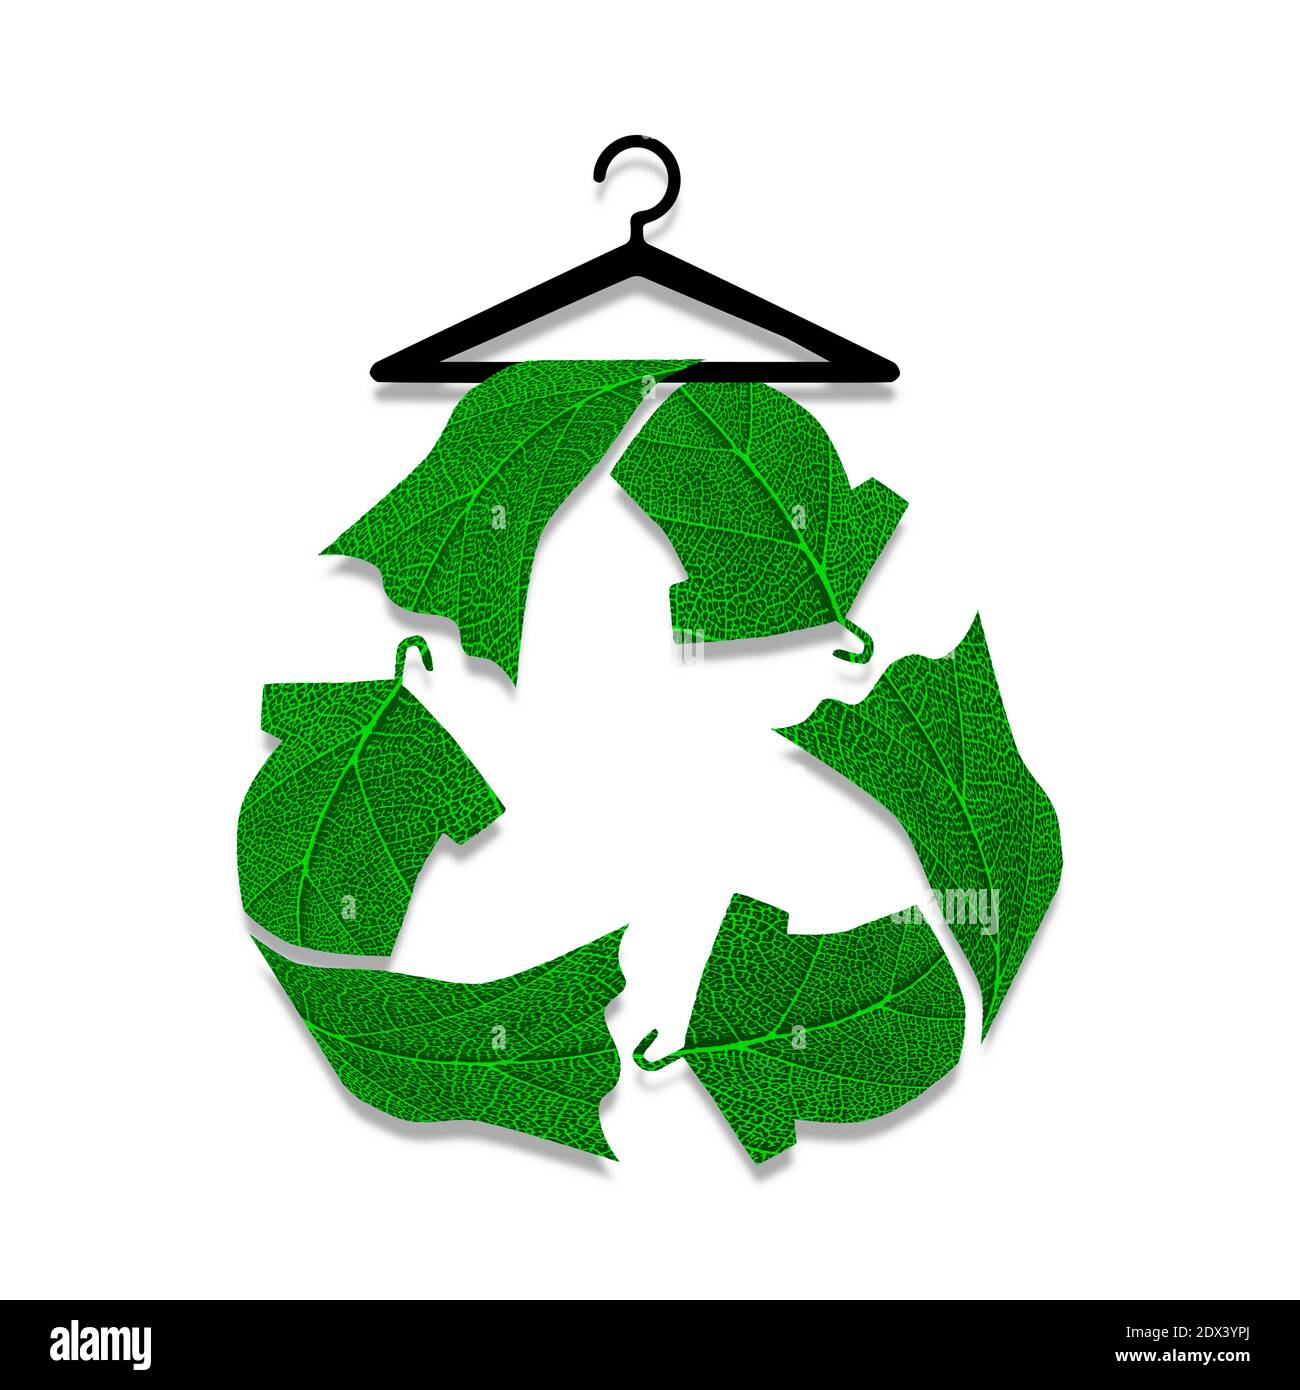 Nachhaltige Mode Text mit Recycling Kleidung Symbol auf Kleiderbügel aus  Blatt, reduzieren Abfall Konzept Stockfotografie - Alamy